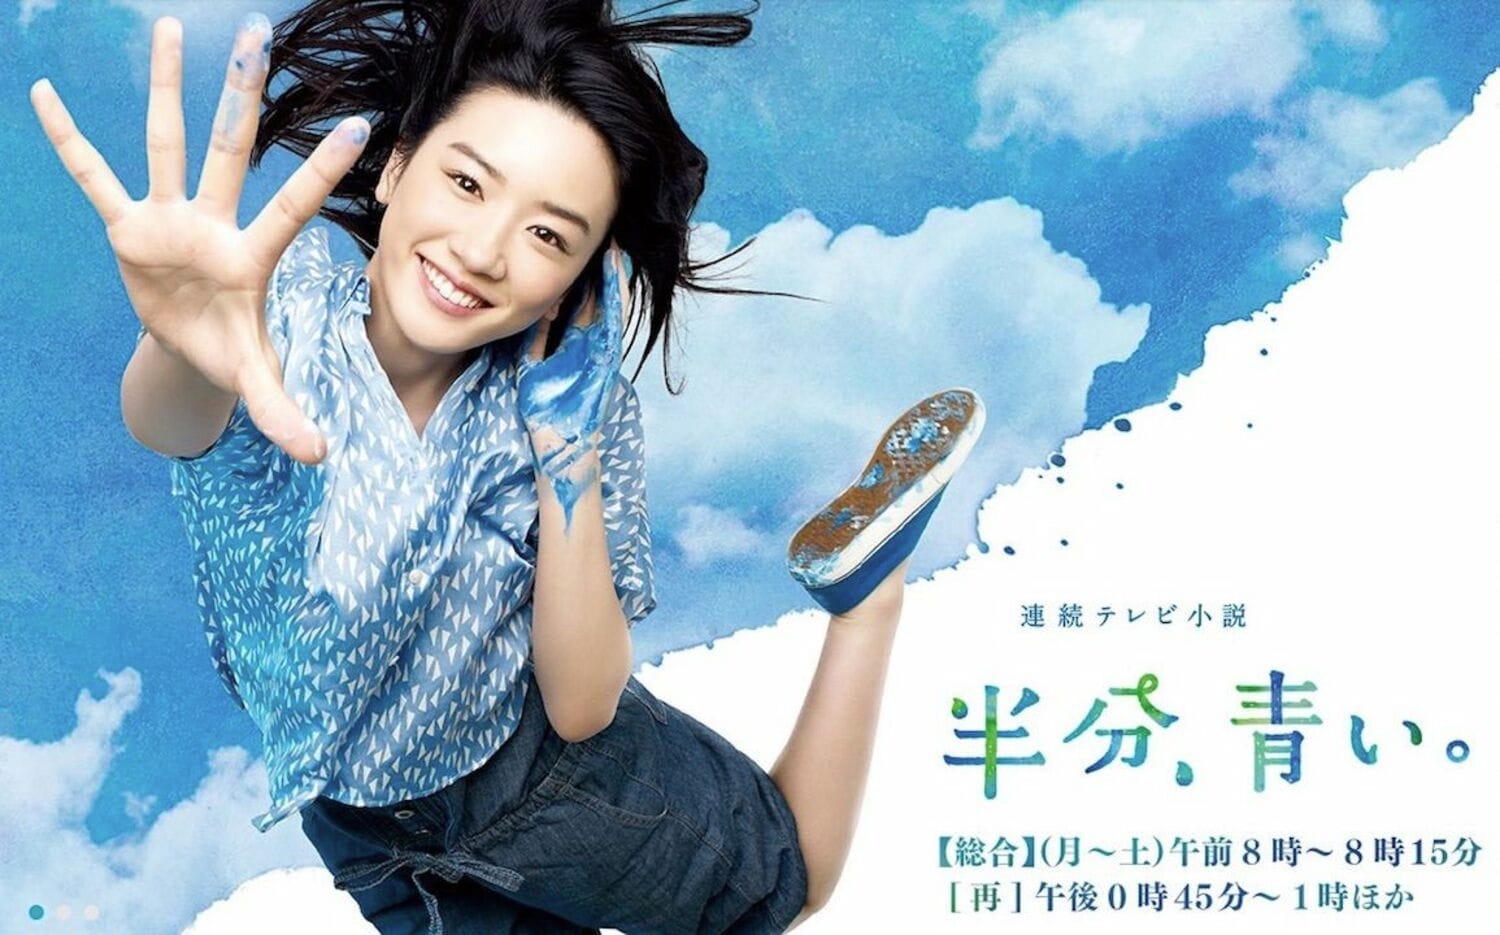 『半分、青い。』、中村雅俊の“仙吉じいちゃん”は役者としての新基軸!?の画像